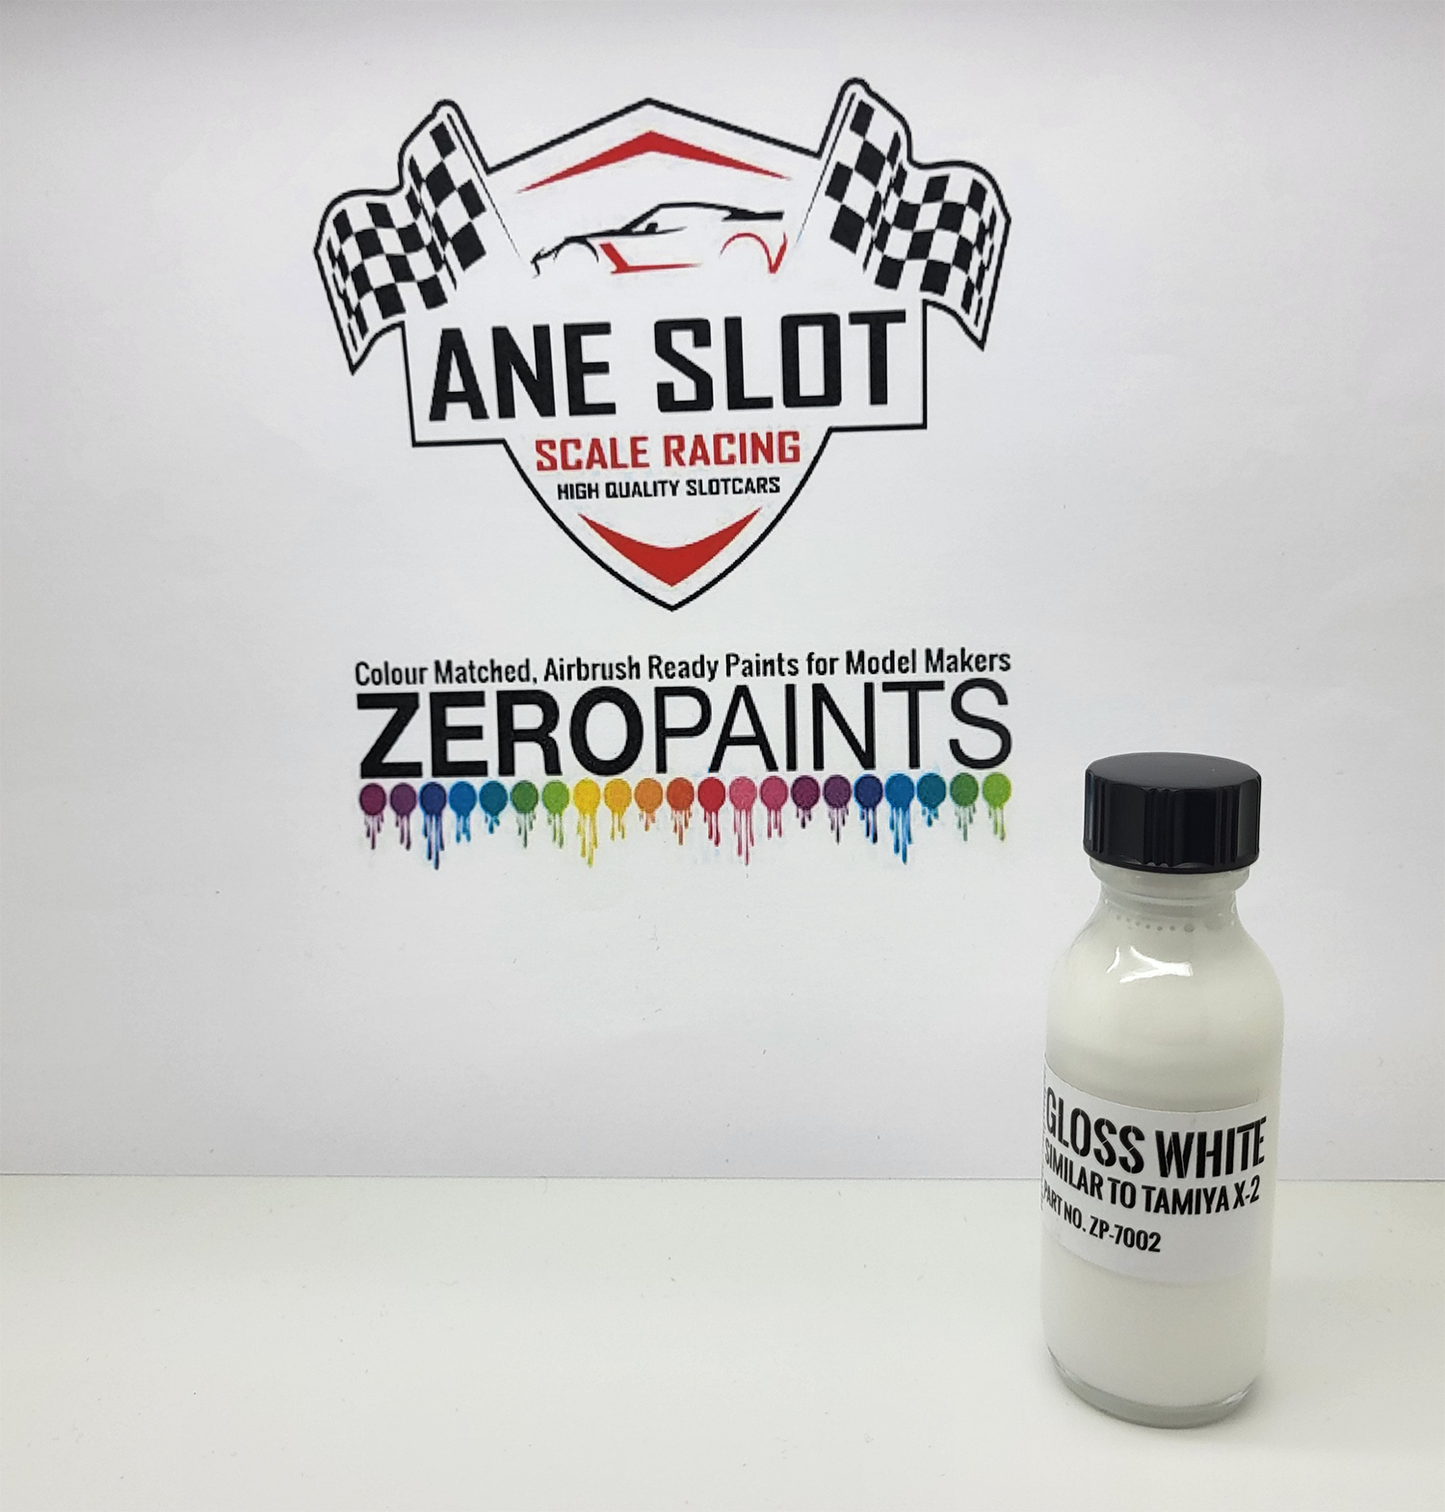 Zeropaints ZP-7002" Gloss WHITE "